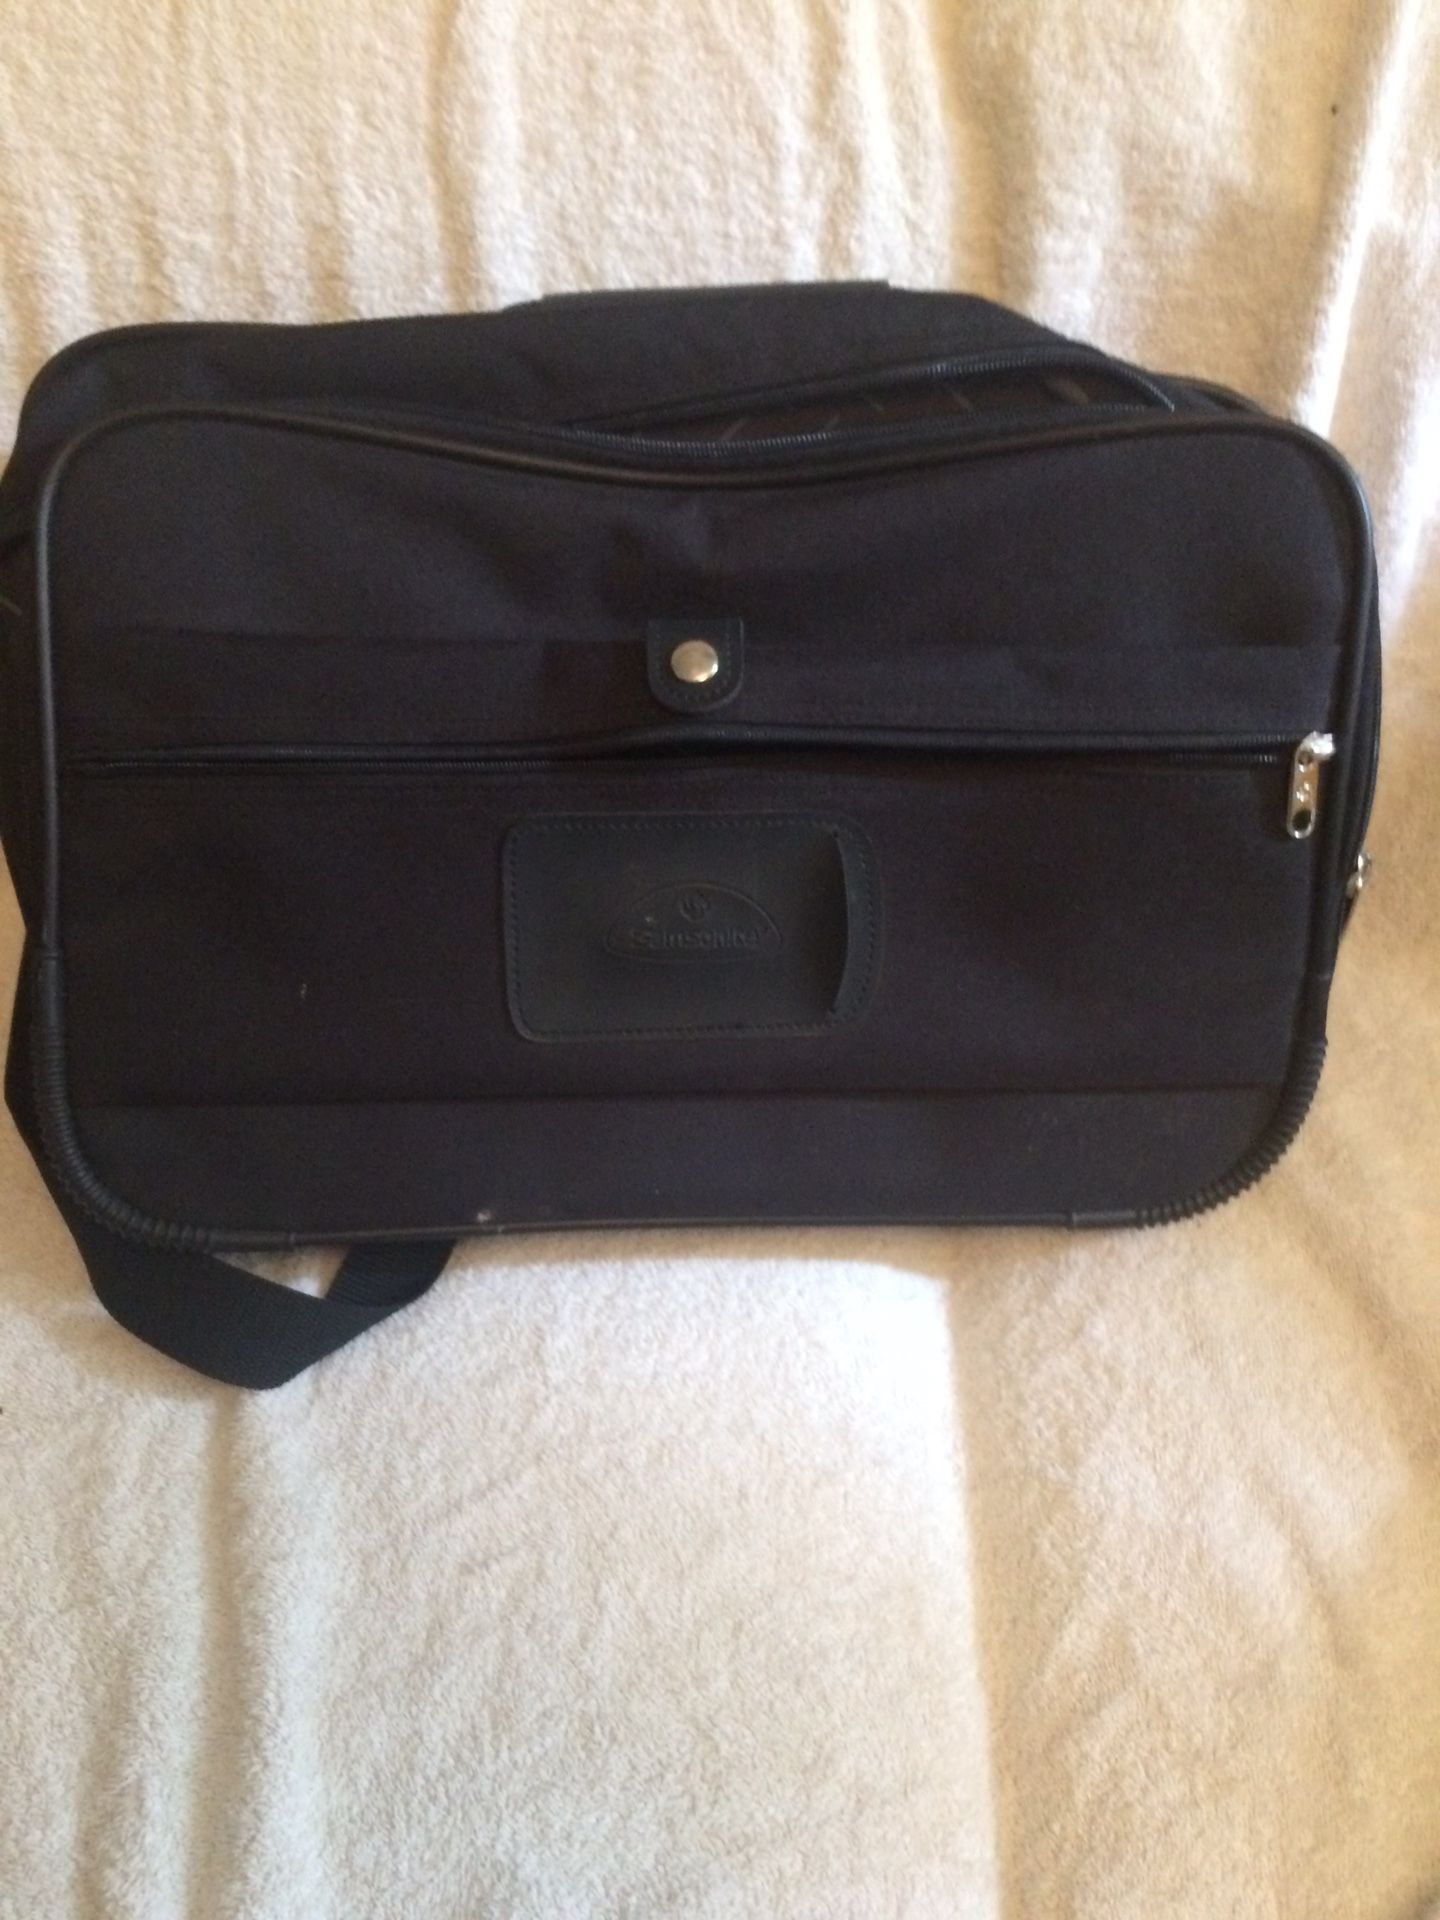 Samsonite Laptop Bag with Shoulder Straps